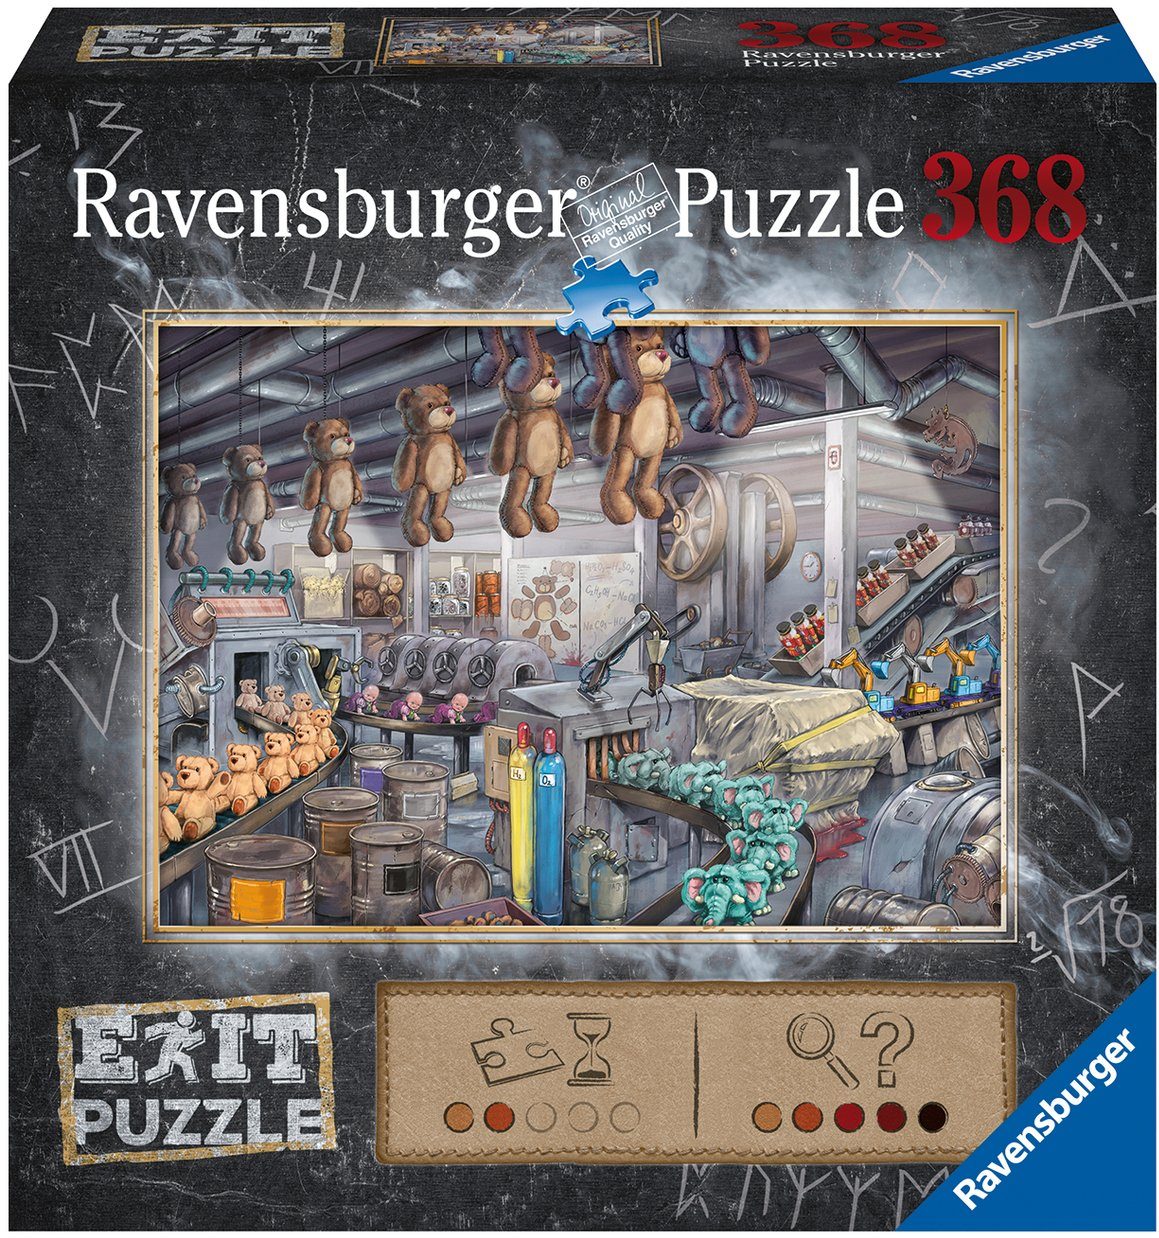 - in Wald Spielzeugfabrik, Exit: Puzzle 368 schützt - Puzzleteile, weltweit Made der FSC® In Ravensburger Germany,